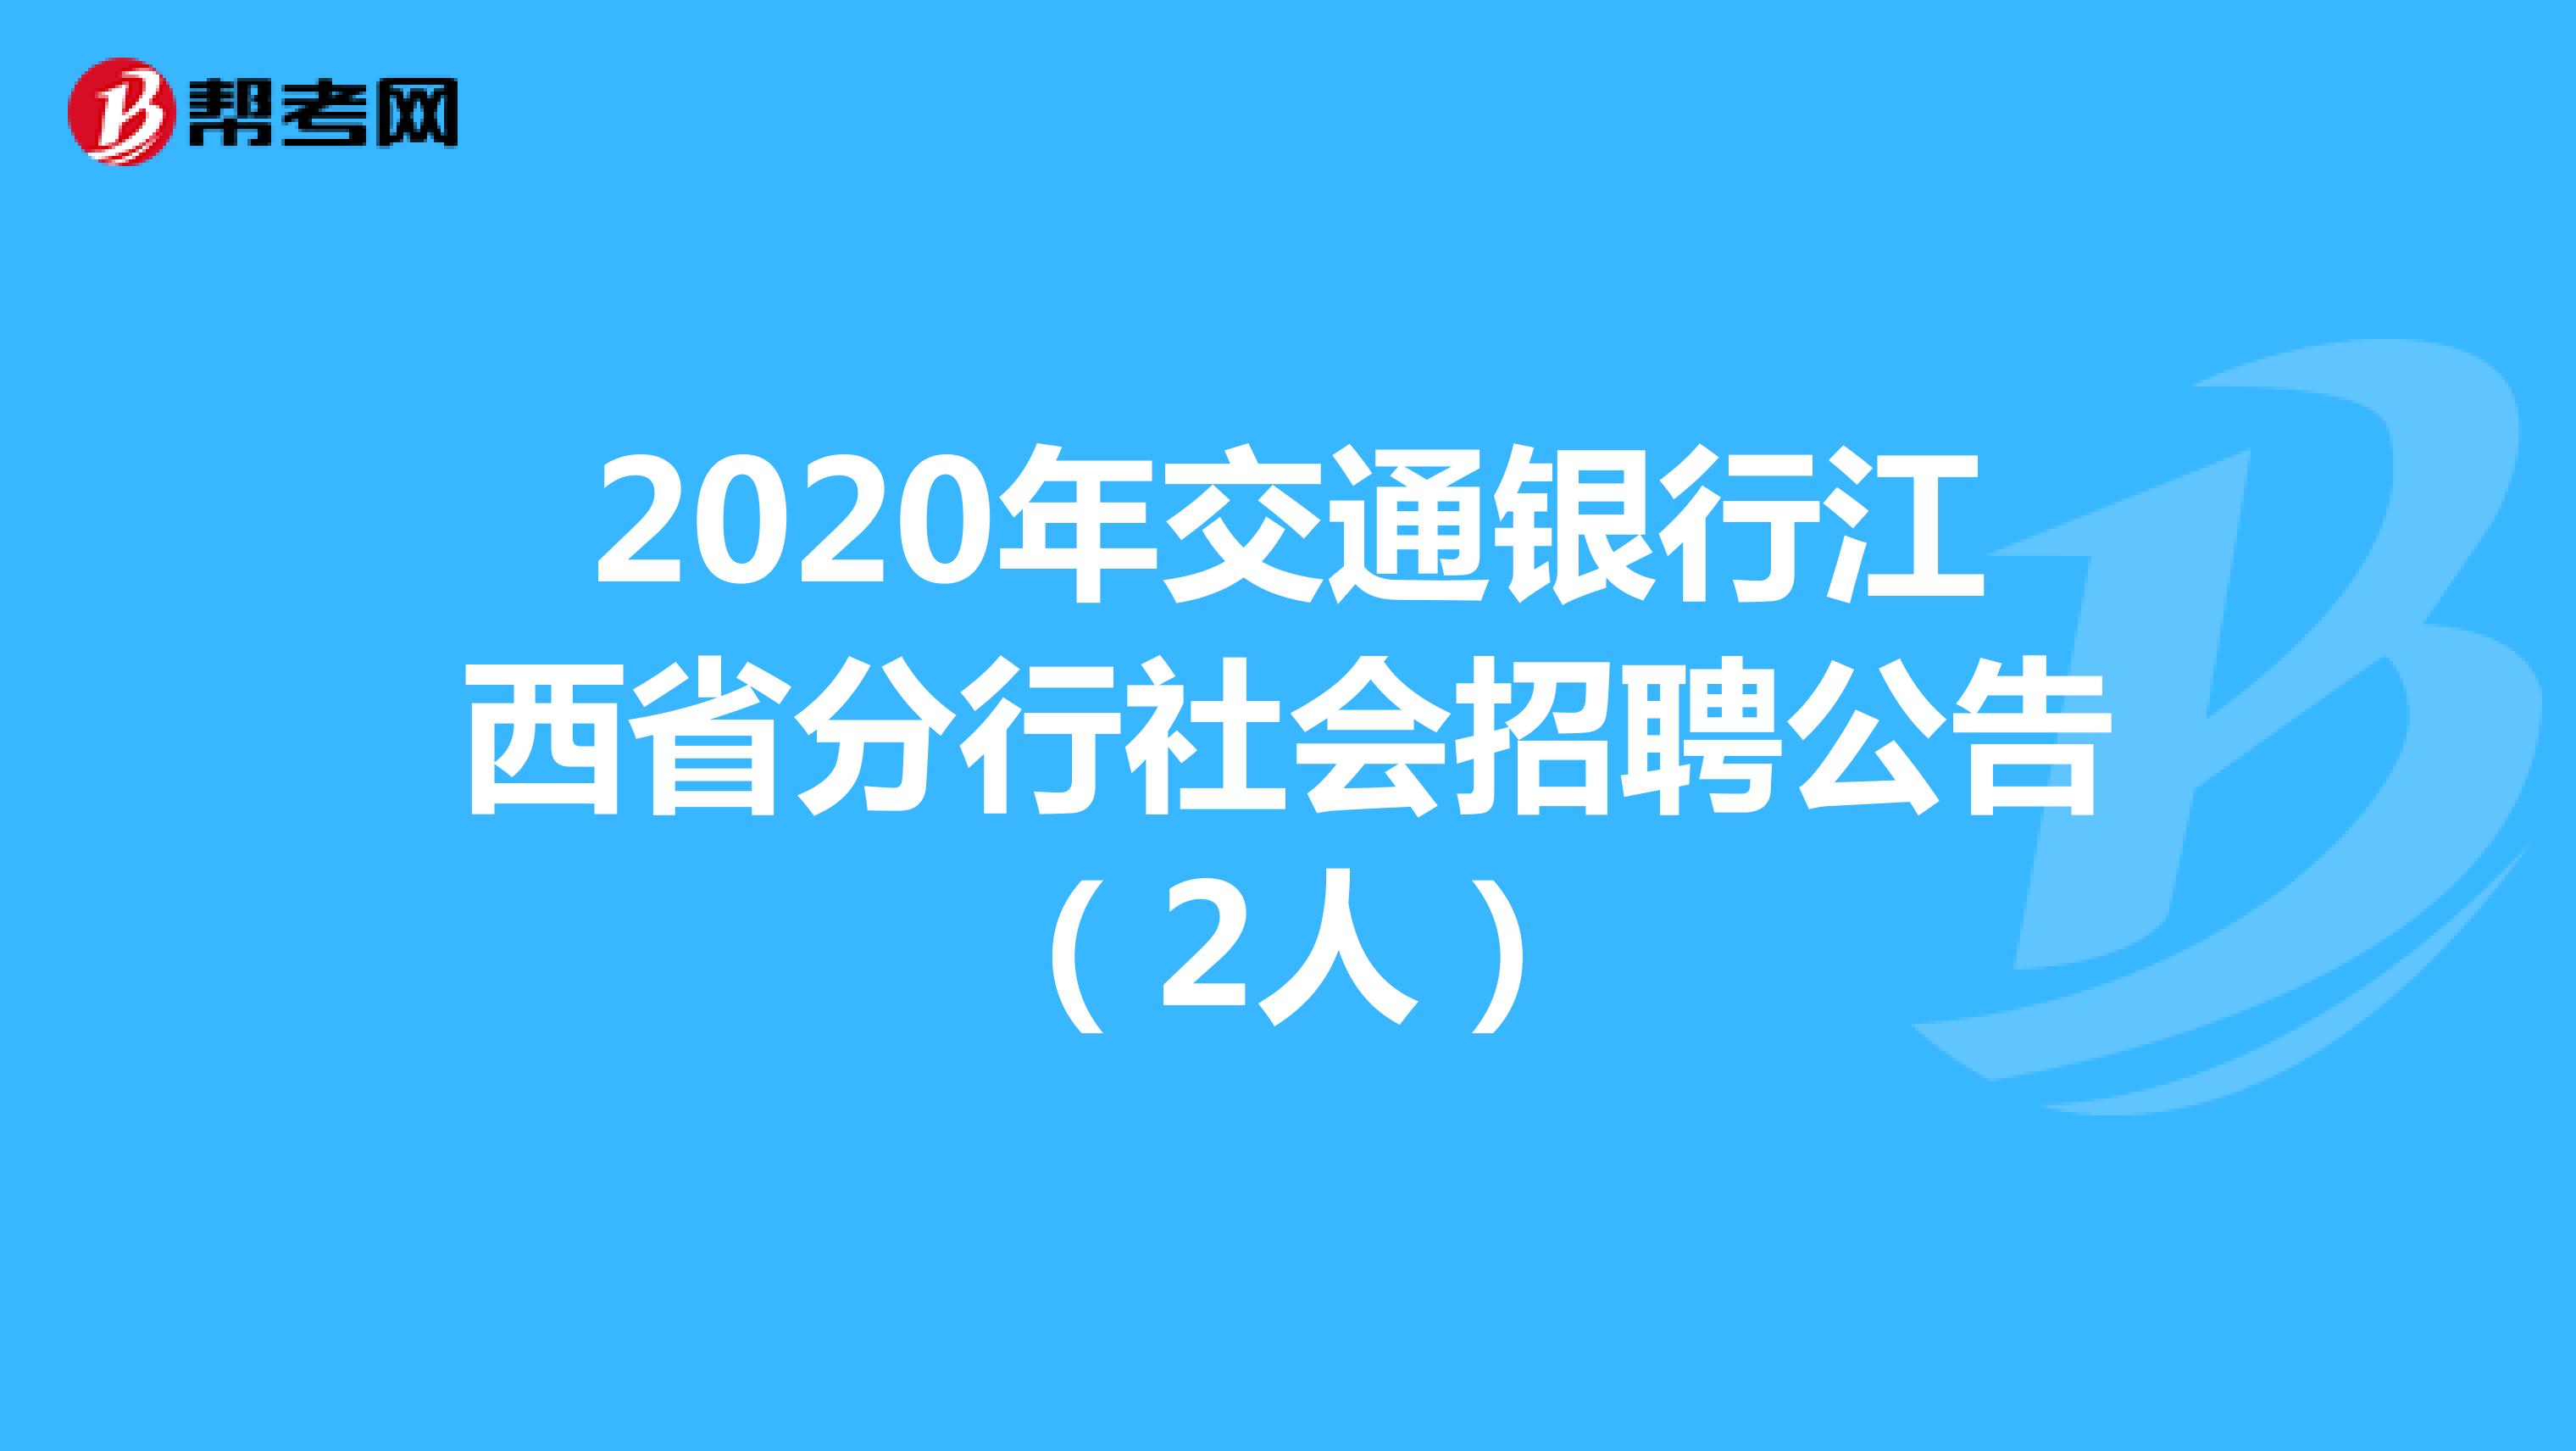 2020年交通银行江西省分行社会招聘公告（2人）